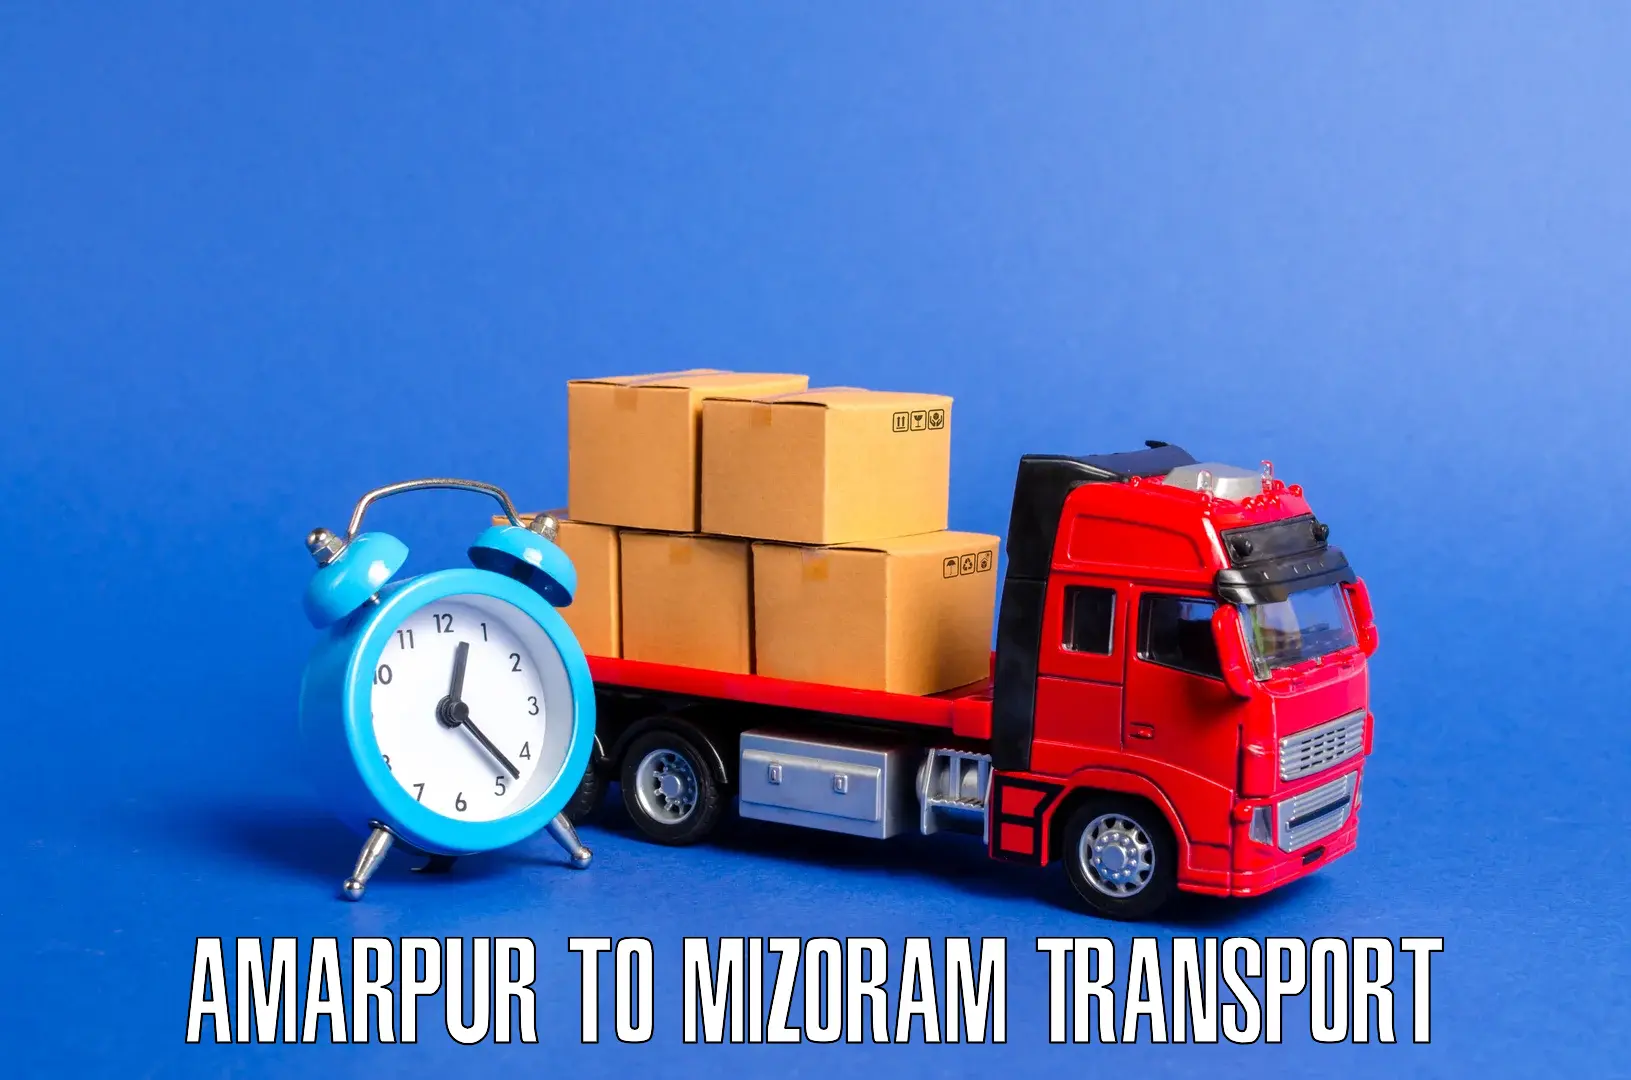 Nearest transport service Amarpur to Lunglei